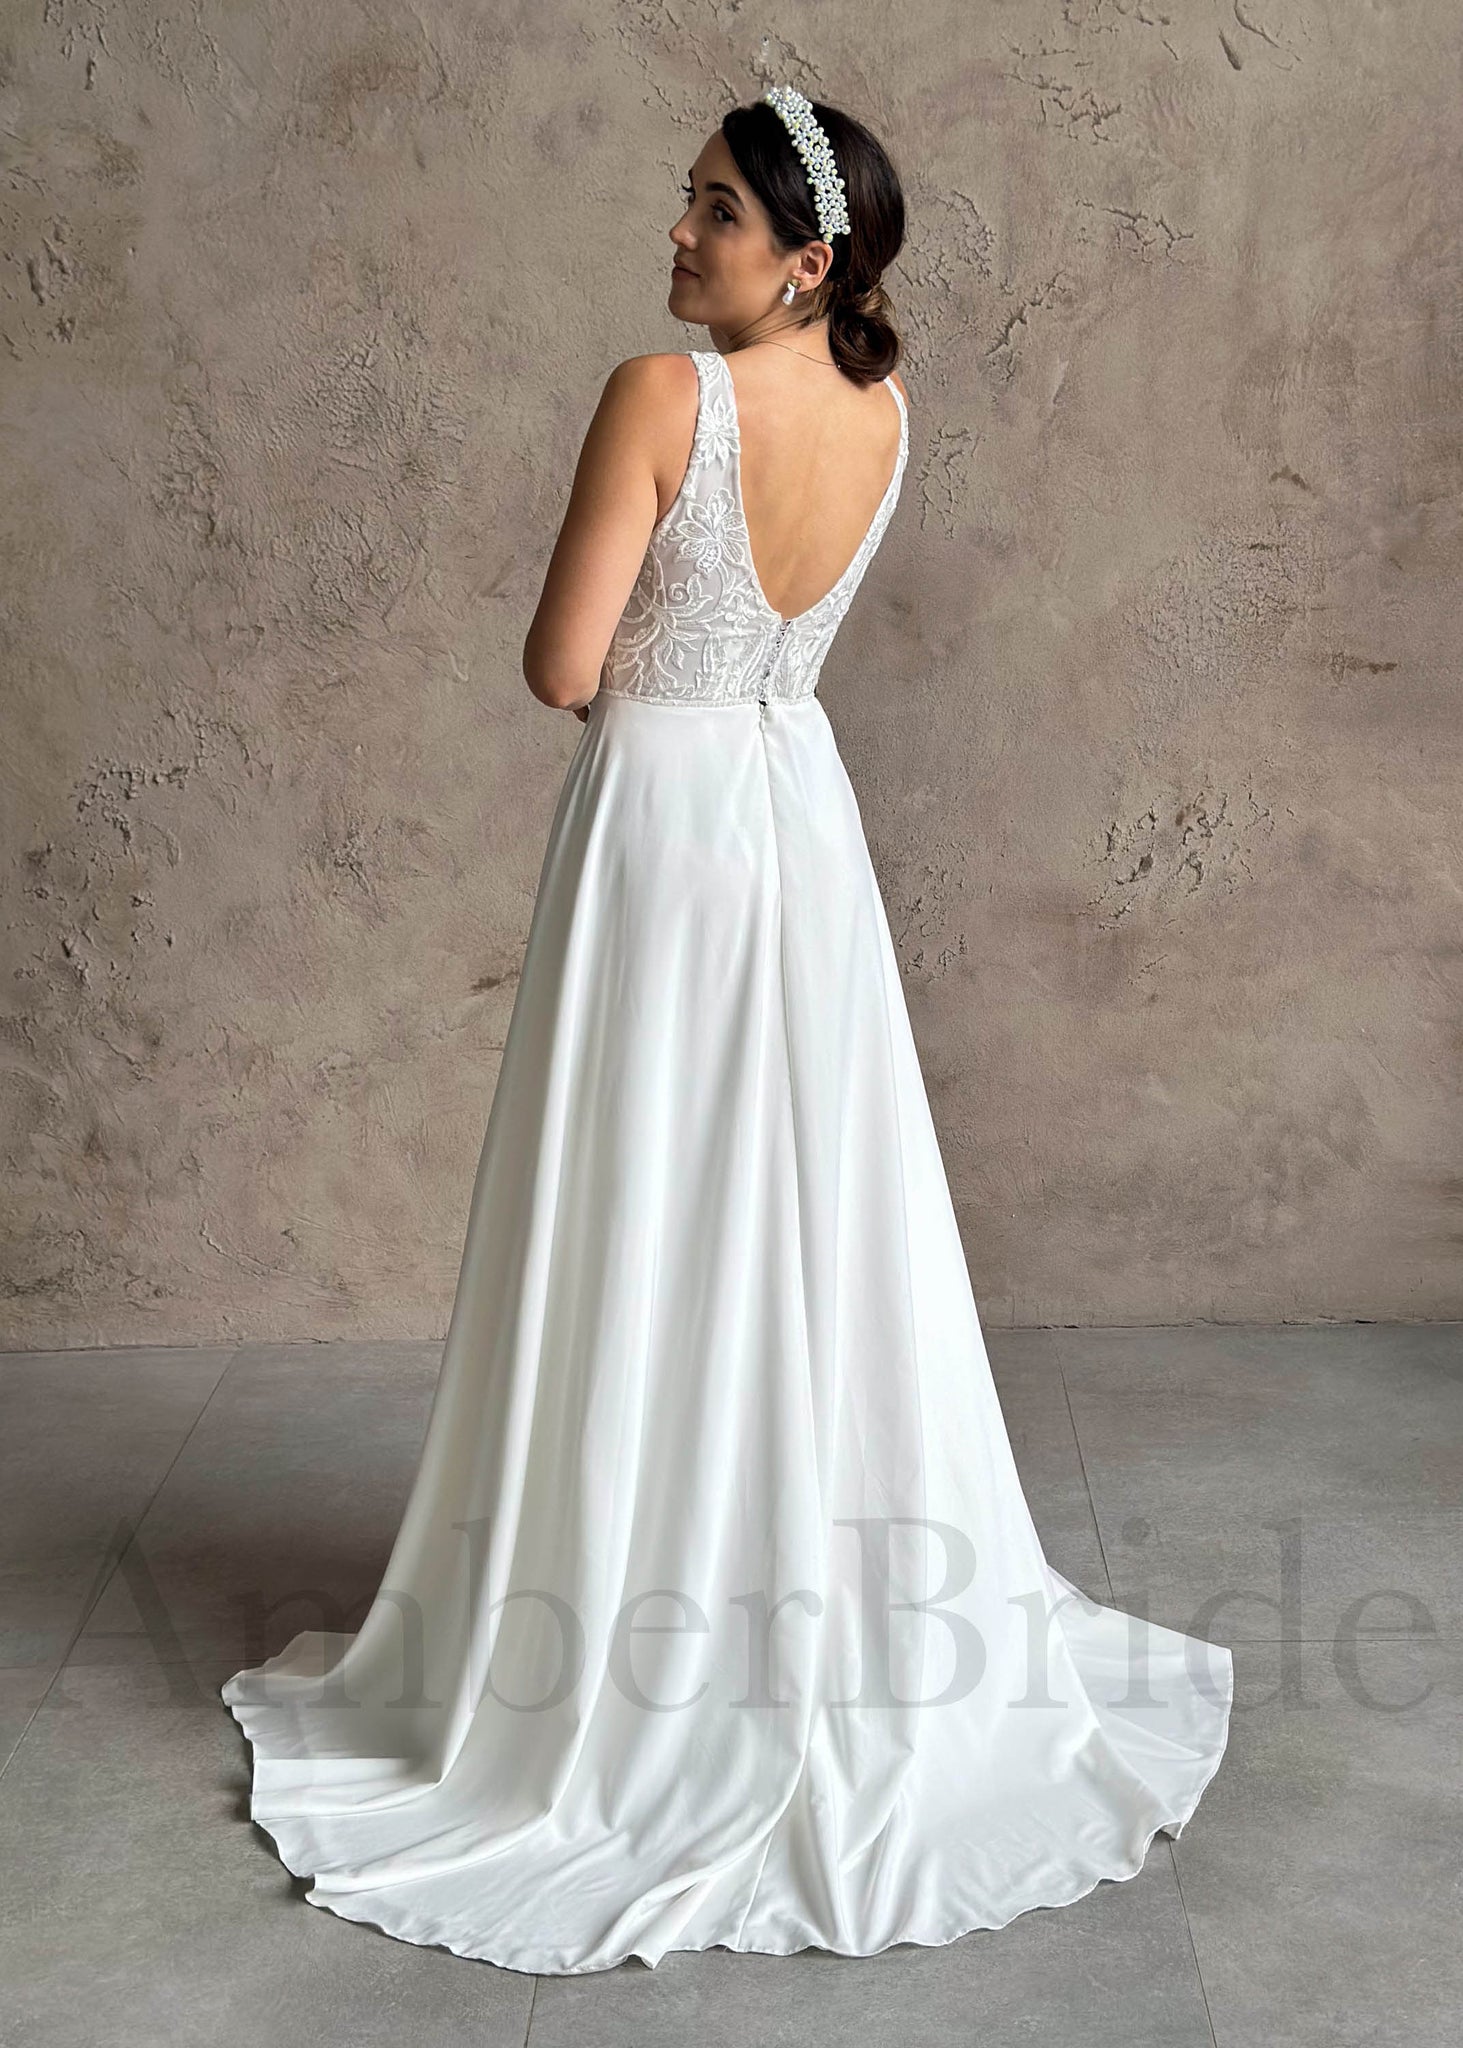 Boho A-Line Backless Wedding Dress with Chiffon Skirt